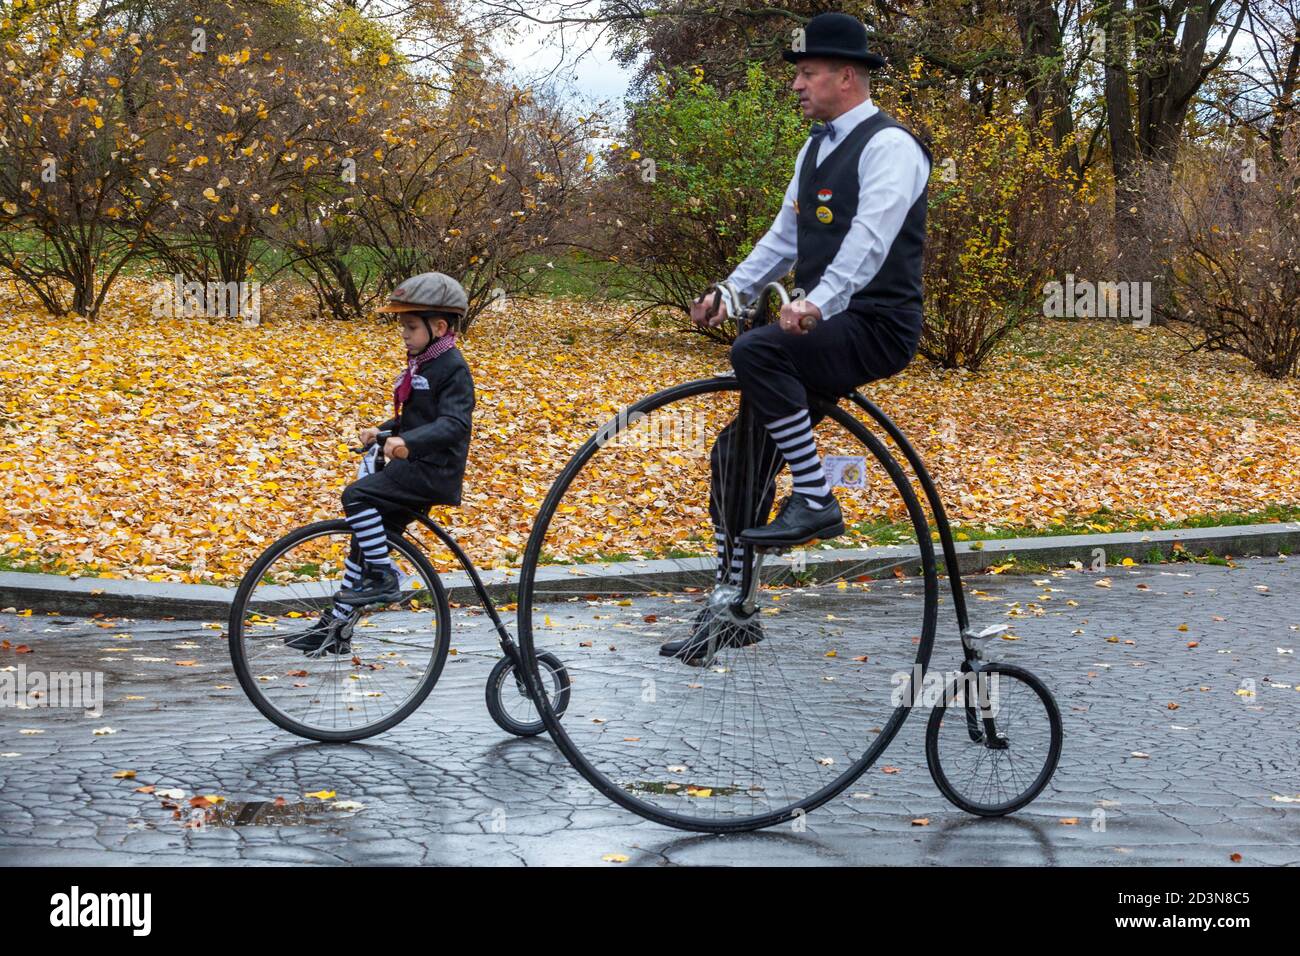 Deux cyclistes, homme à cheval Penny-farthing vélo enfant personnes traditionnel période costume Banque D'Images